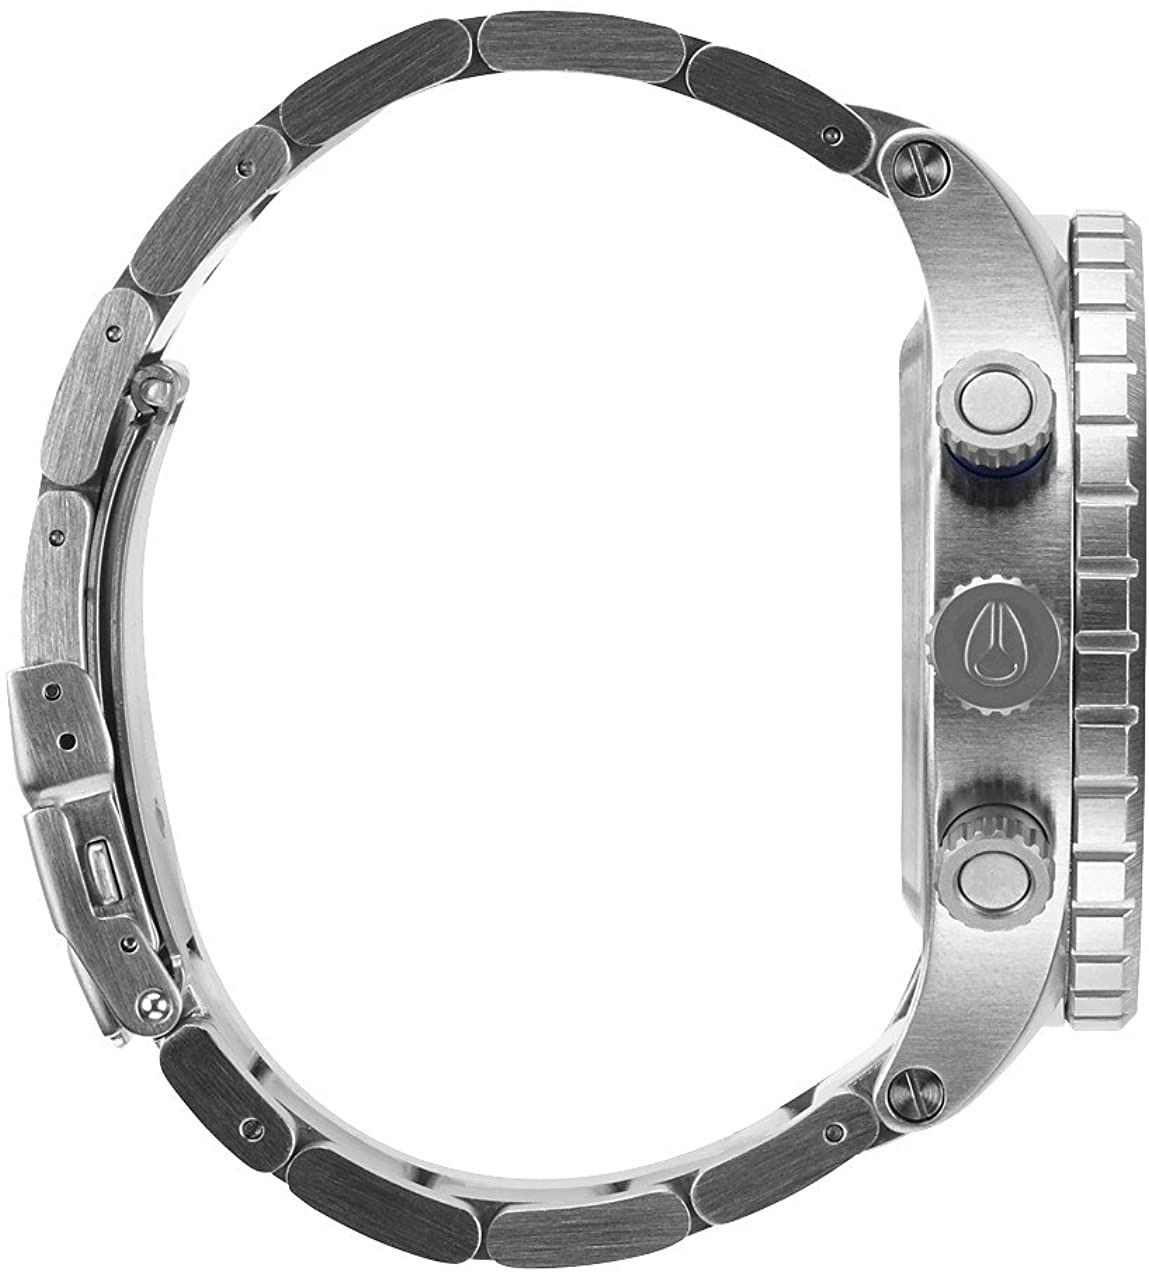 ニクソン NIXON メンズ腕時計 48-20 A486-1529 ミッドナイト GT A4861529762471